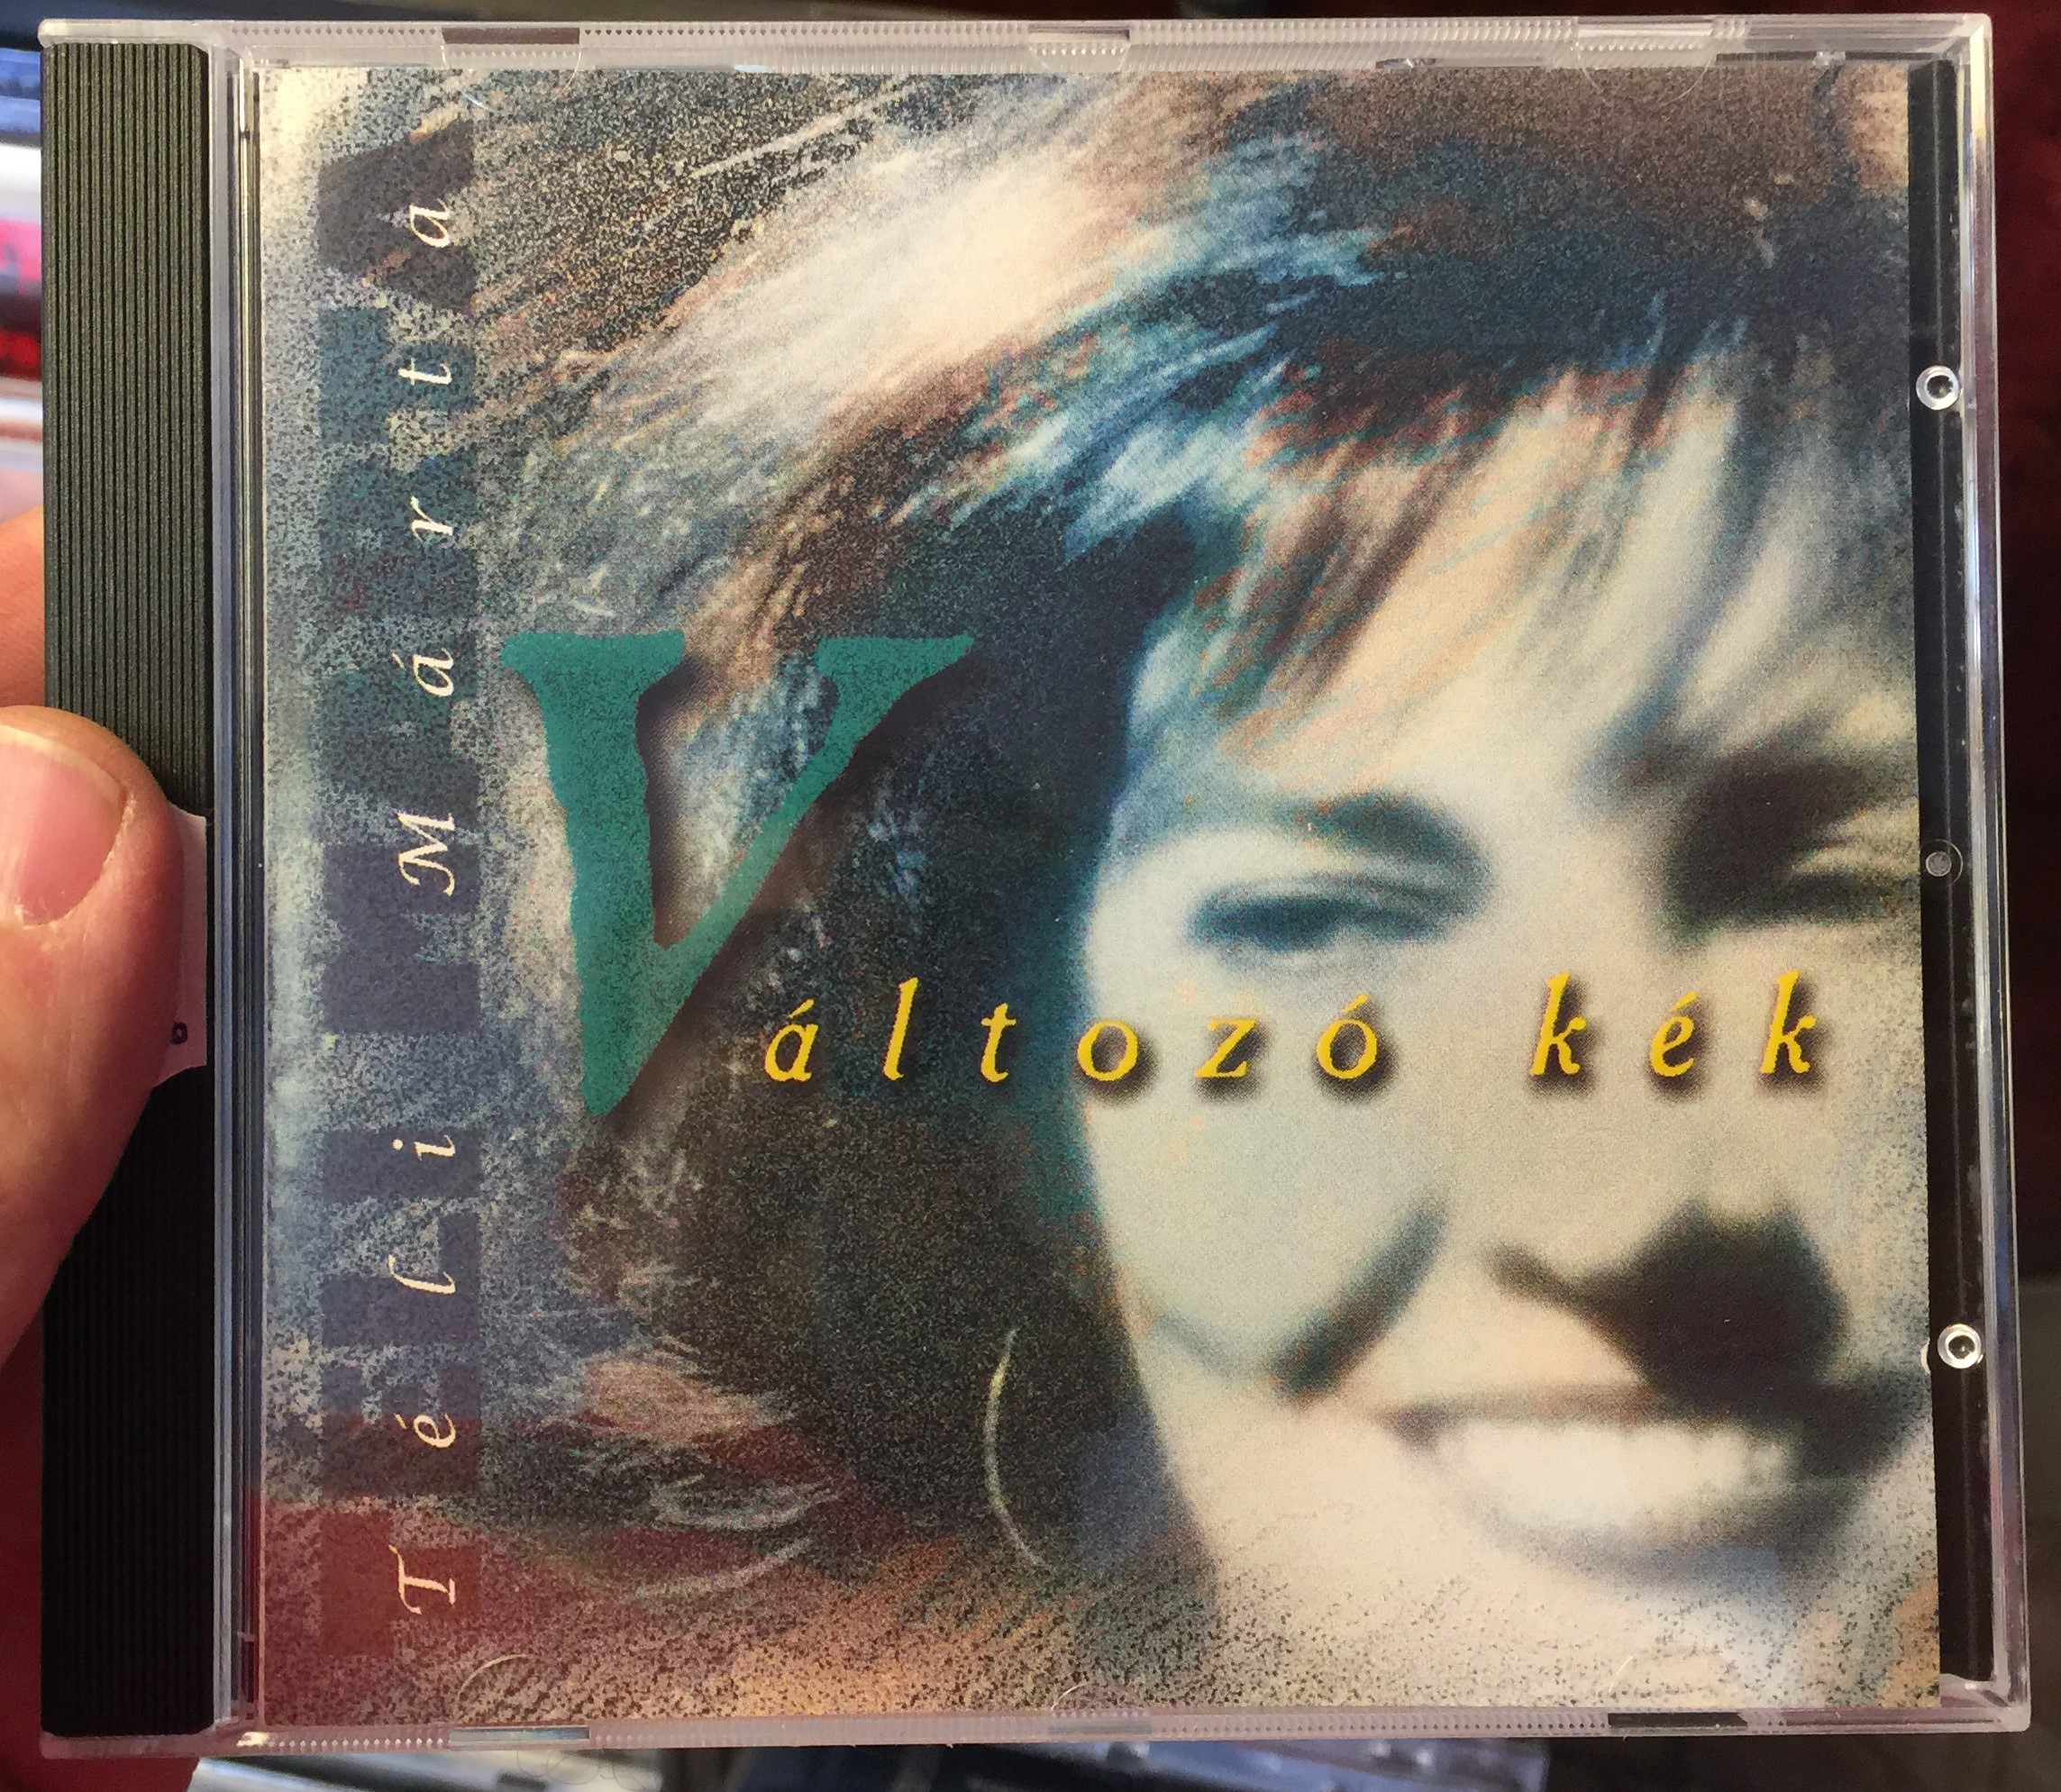 t-li-m-rta-v-ltoz-k-k-bizart-production-audio-cd-1997-1-.jpg